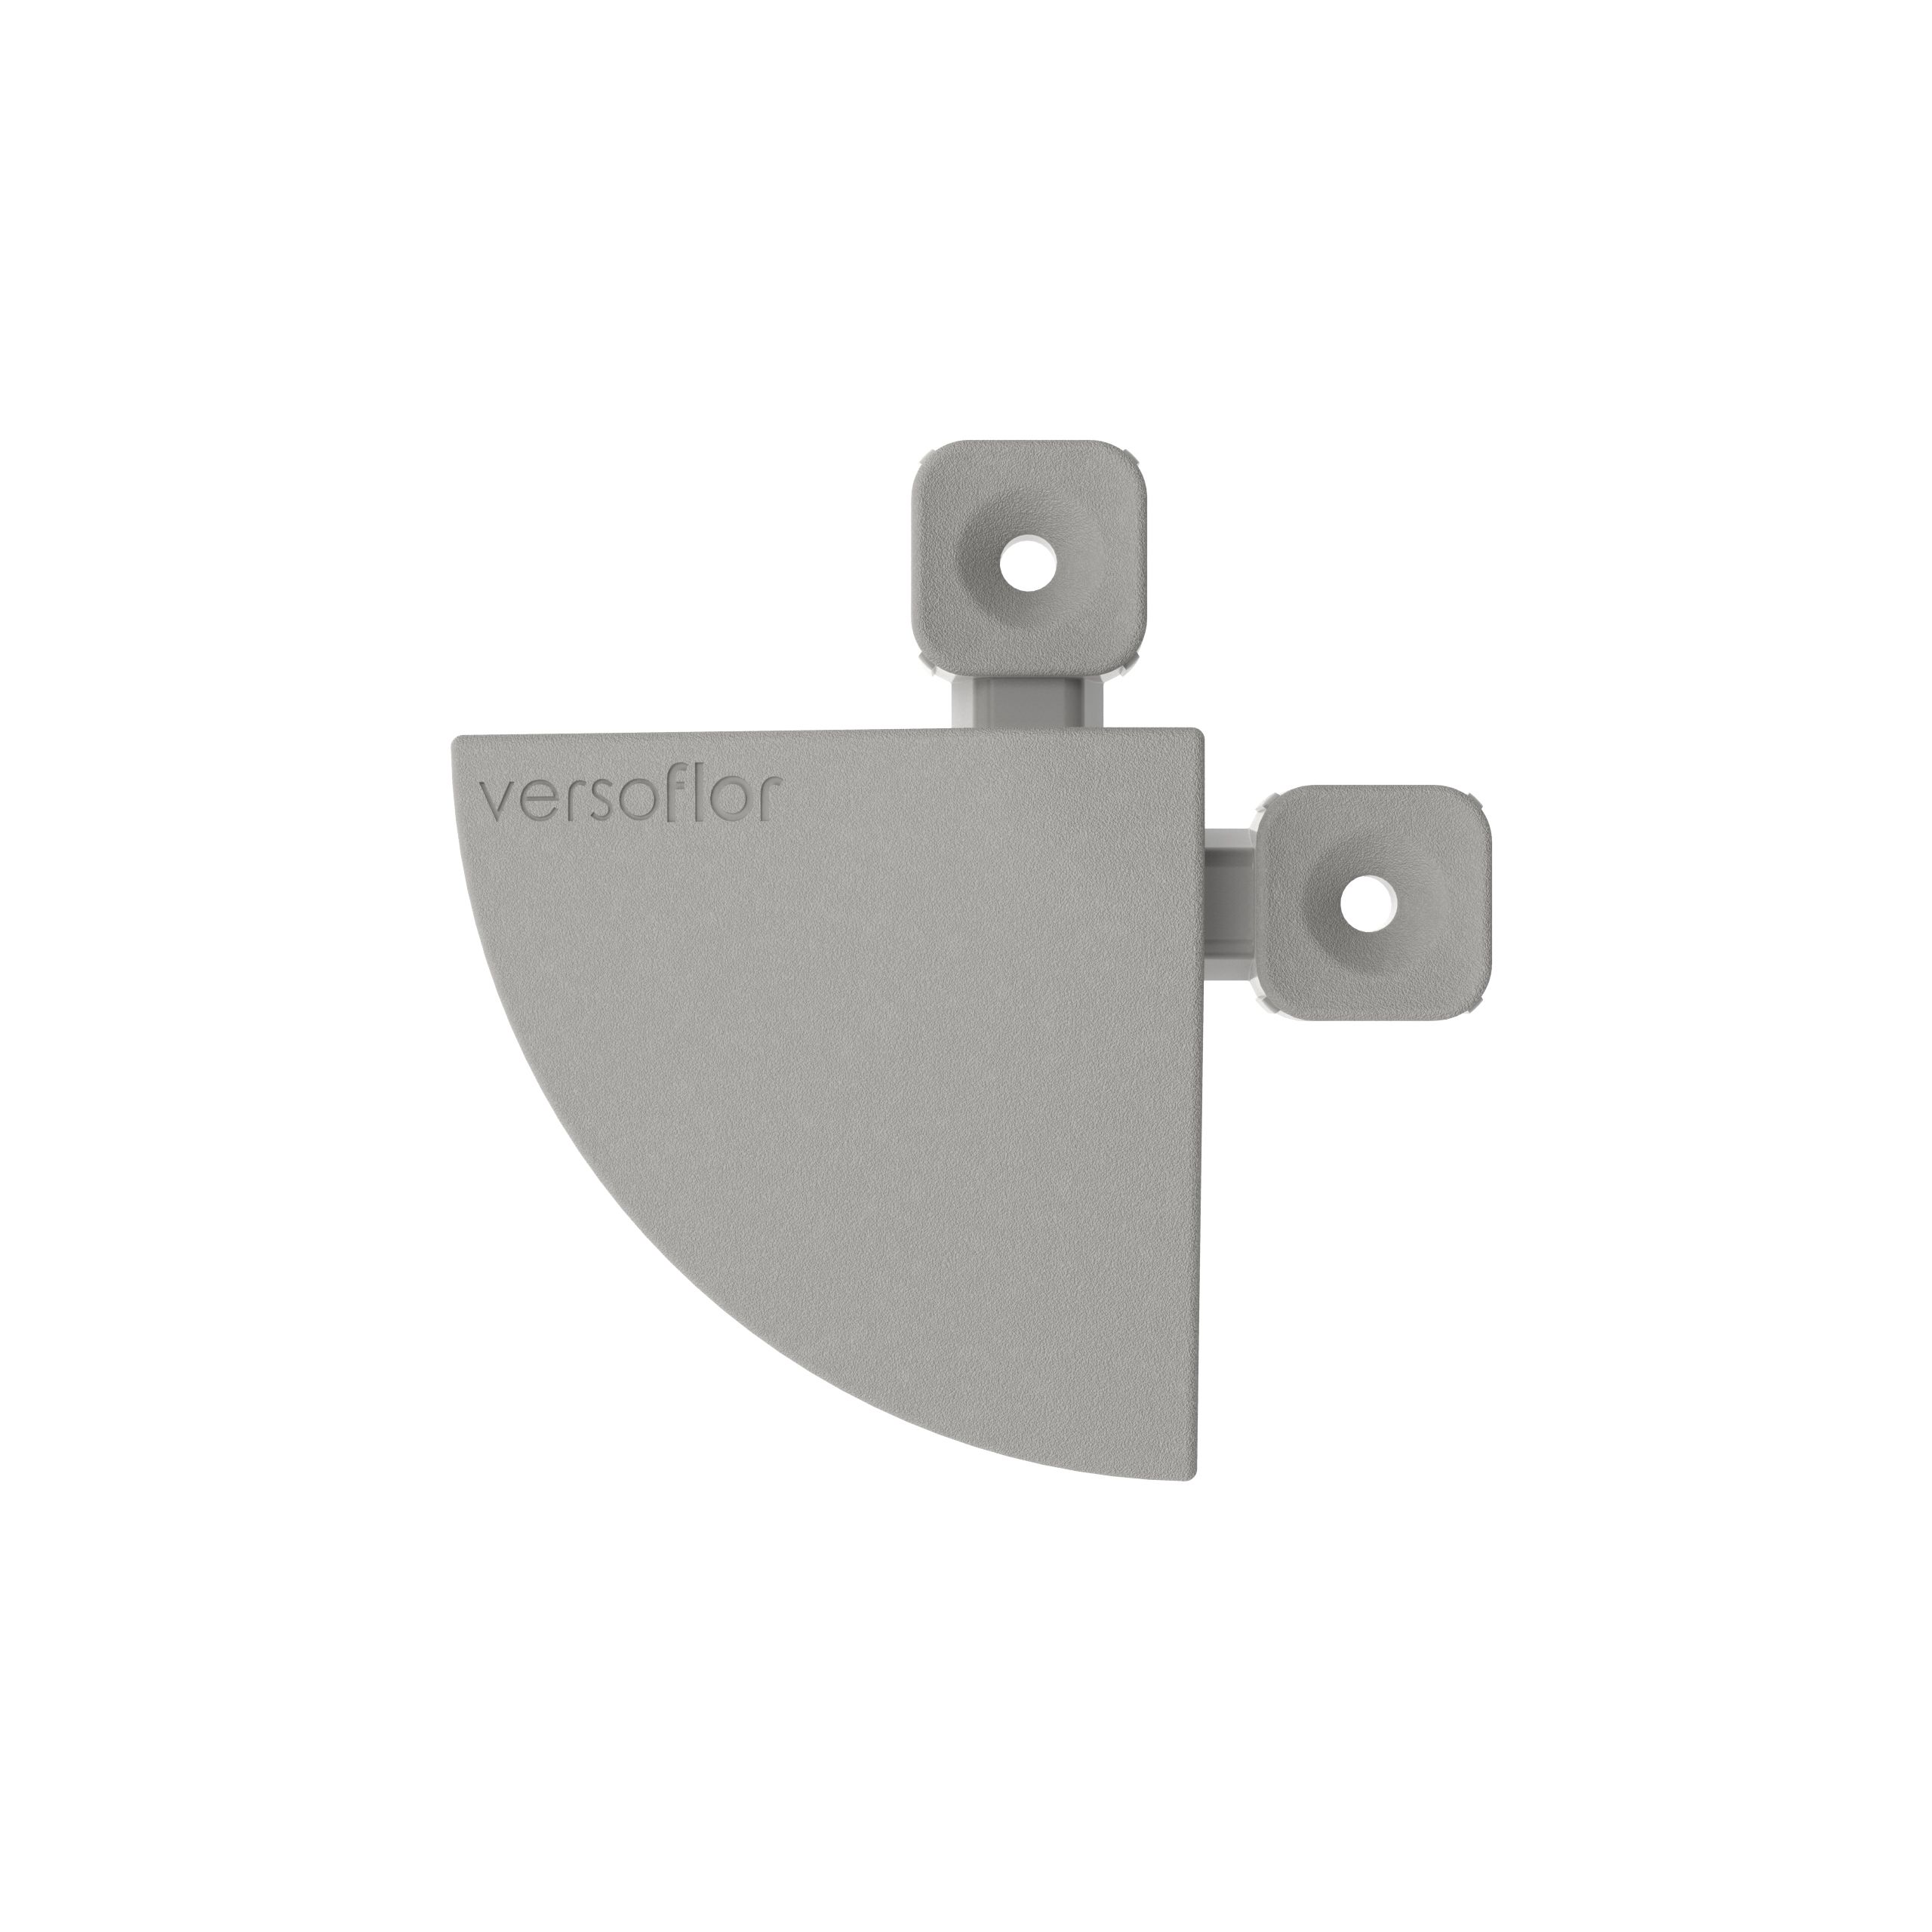 Versoflor Stone Grey Tile corner (L)85mm (T)15mm, Pack of 4